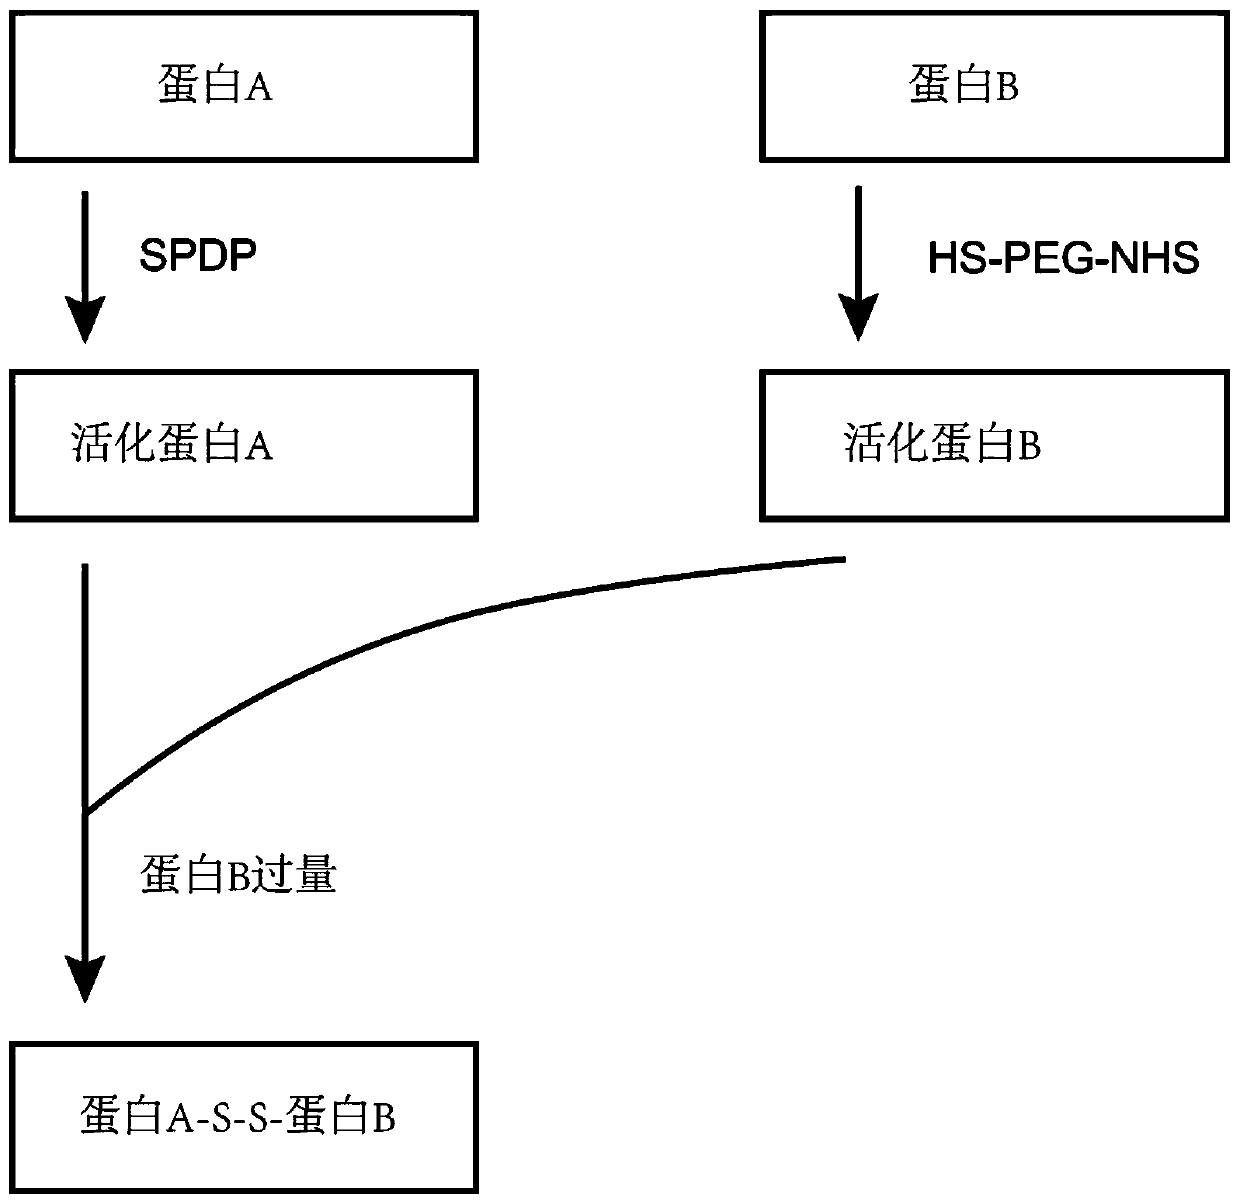 Method for preparing heterodimer protein